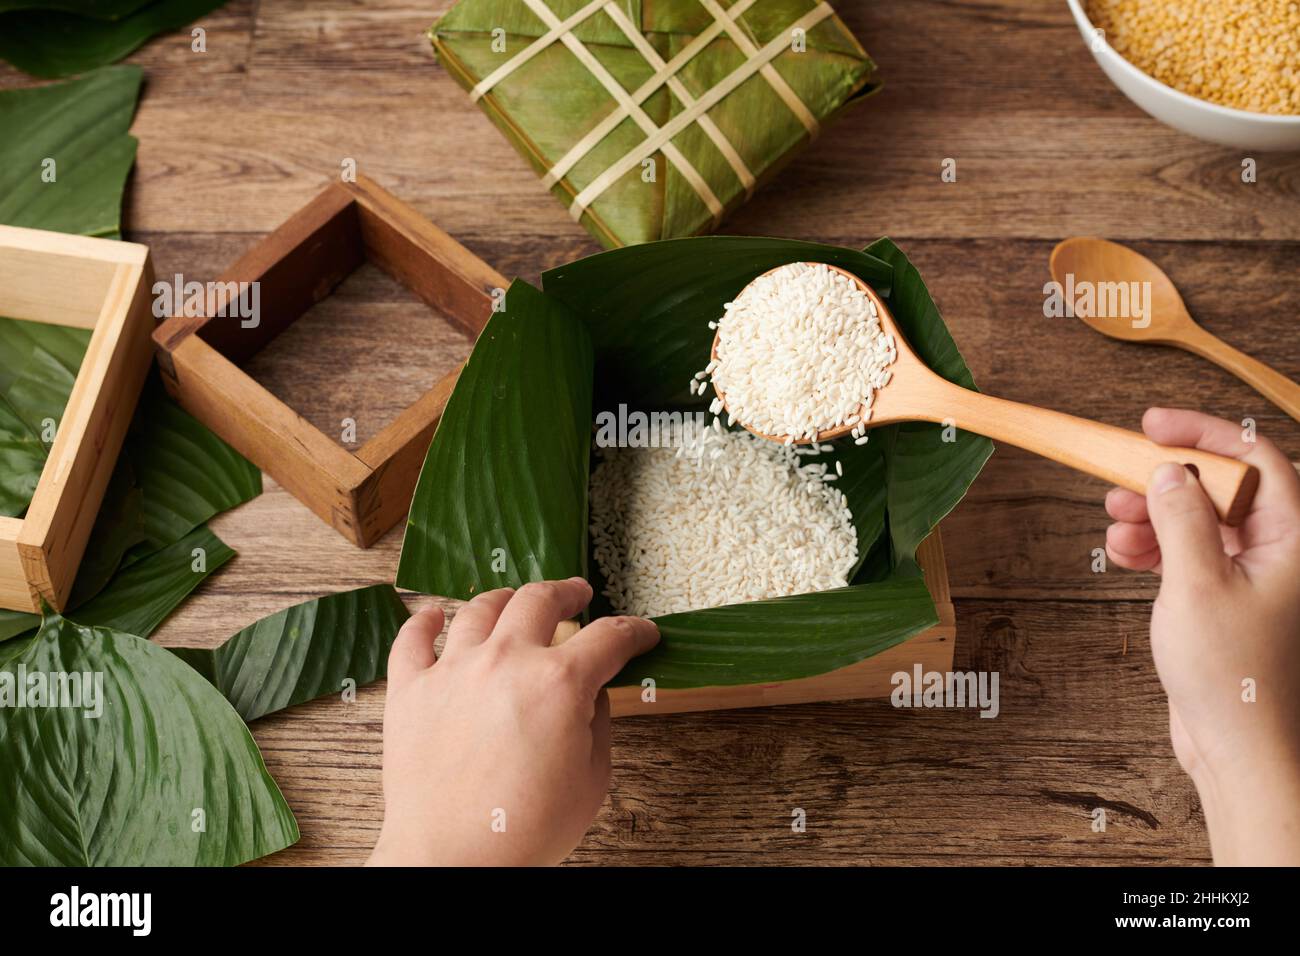 Hände einer Person, die Reis in Holzform mit Lotusblättern im Inneren einlegt, wenn Kuchen für die Tet-Feier gemacht wird Stockfoto